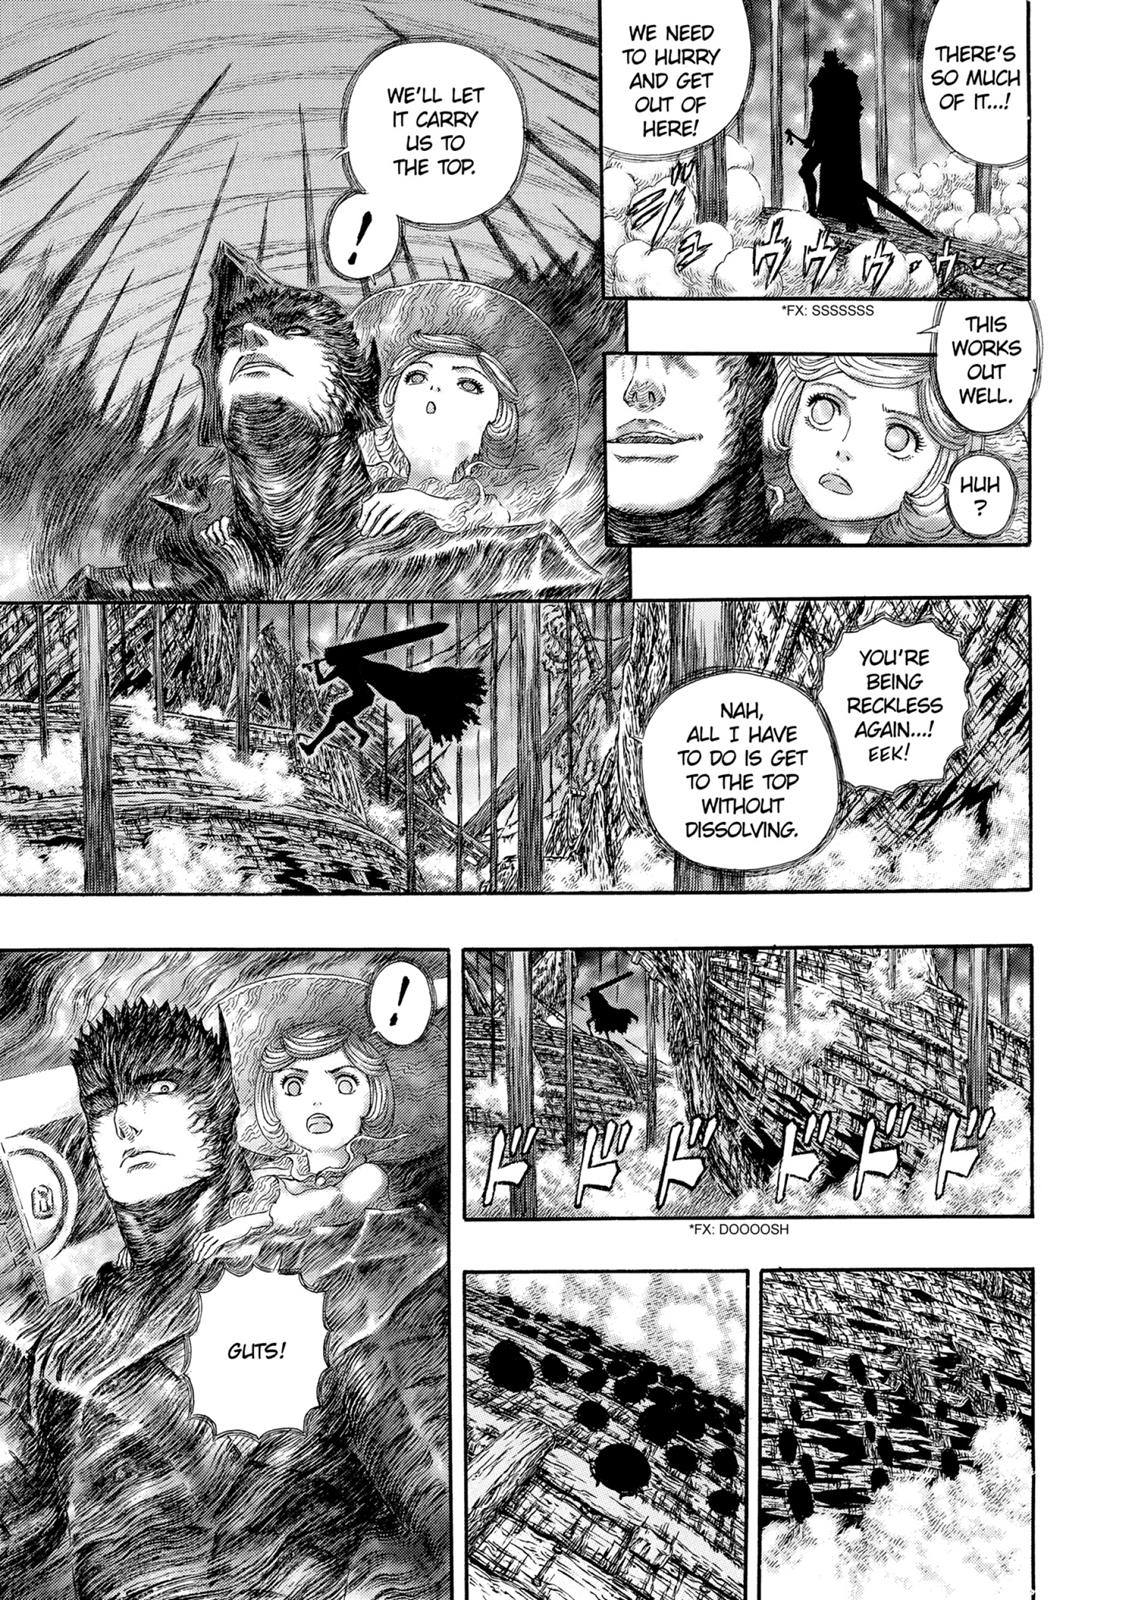 Berserk Manga Chapter 320 image 12